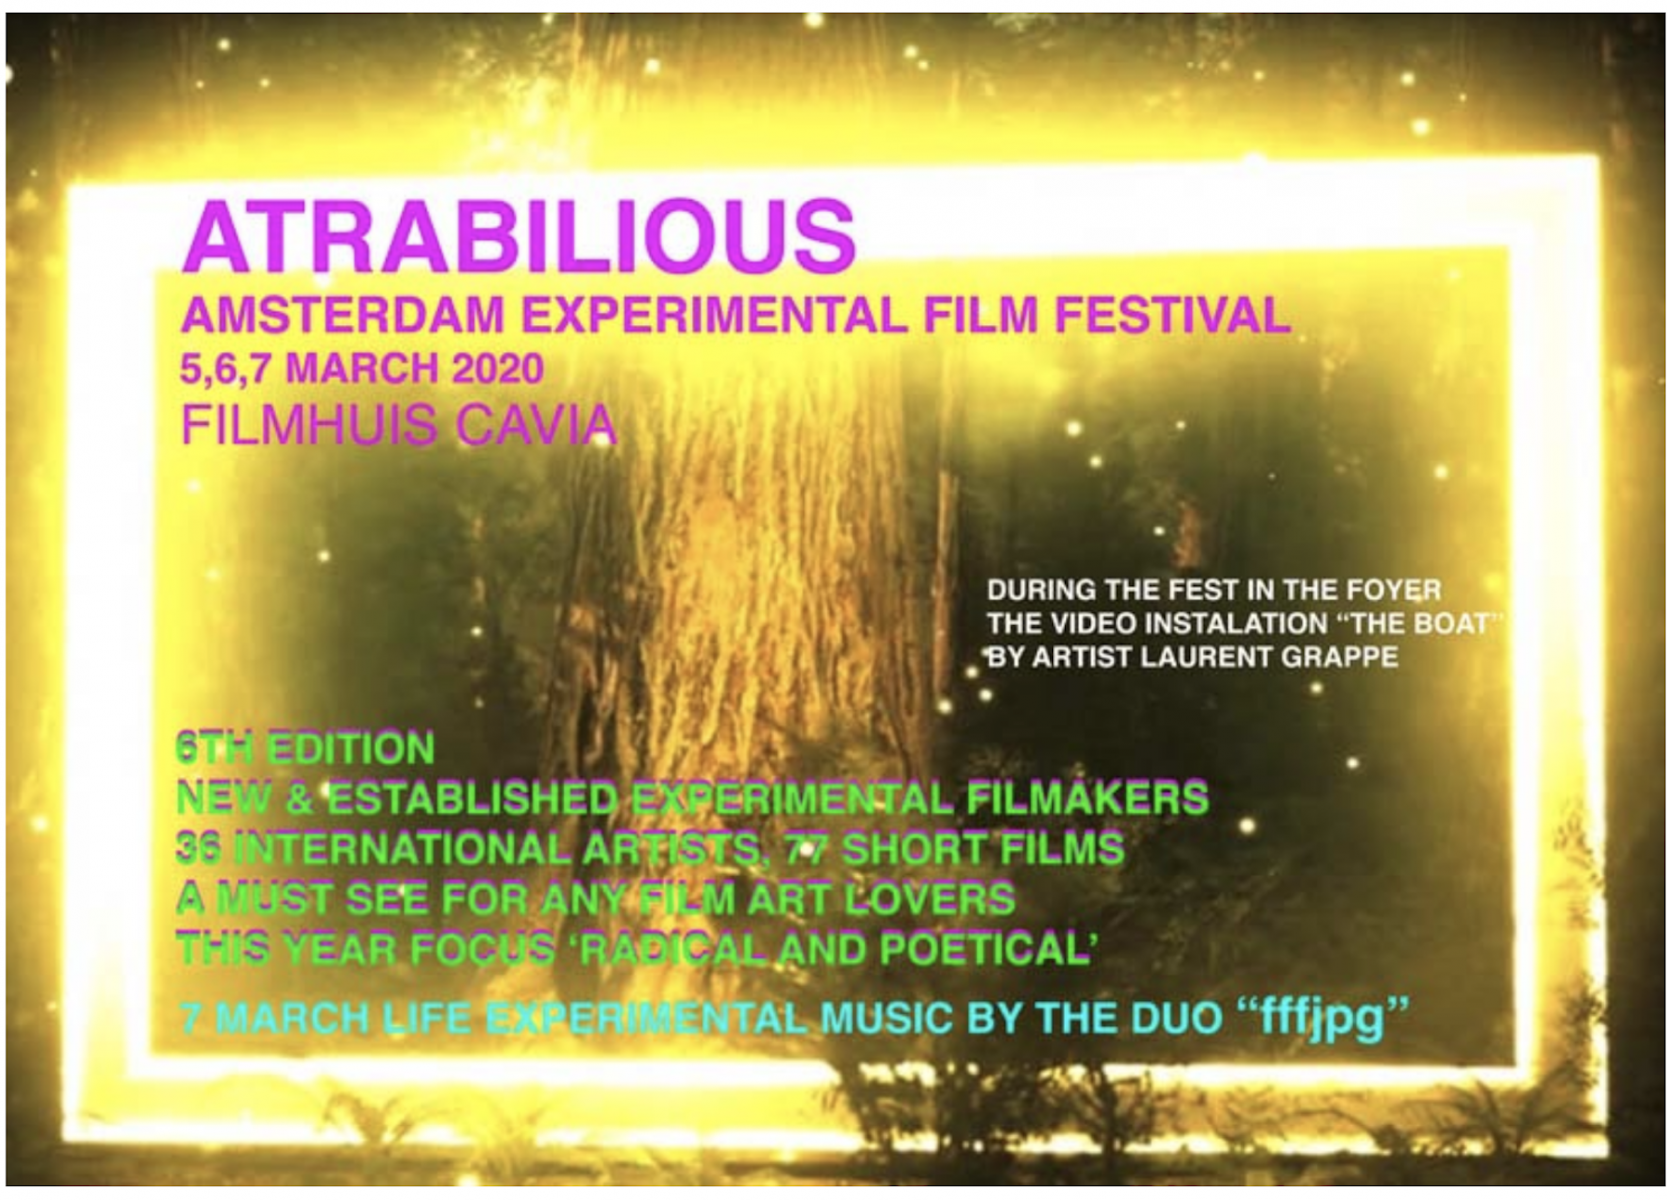 Advertisement for Atrabilius Film Festival